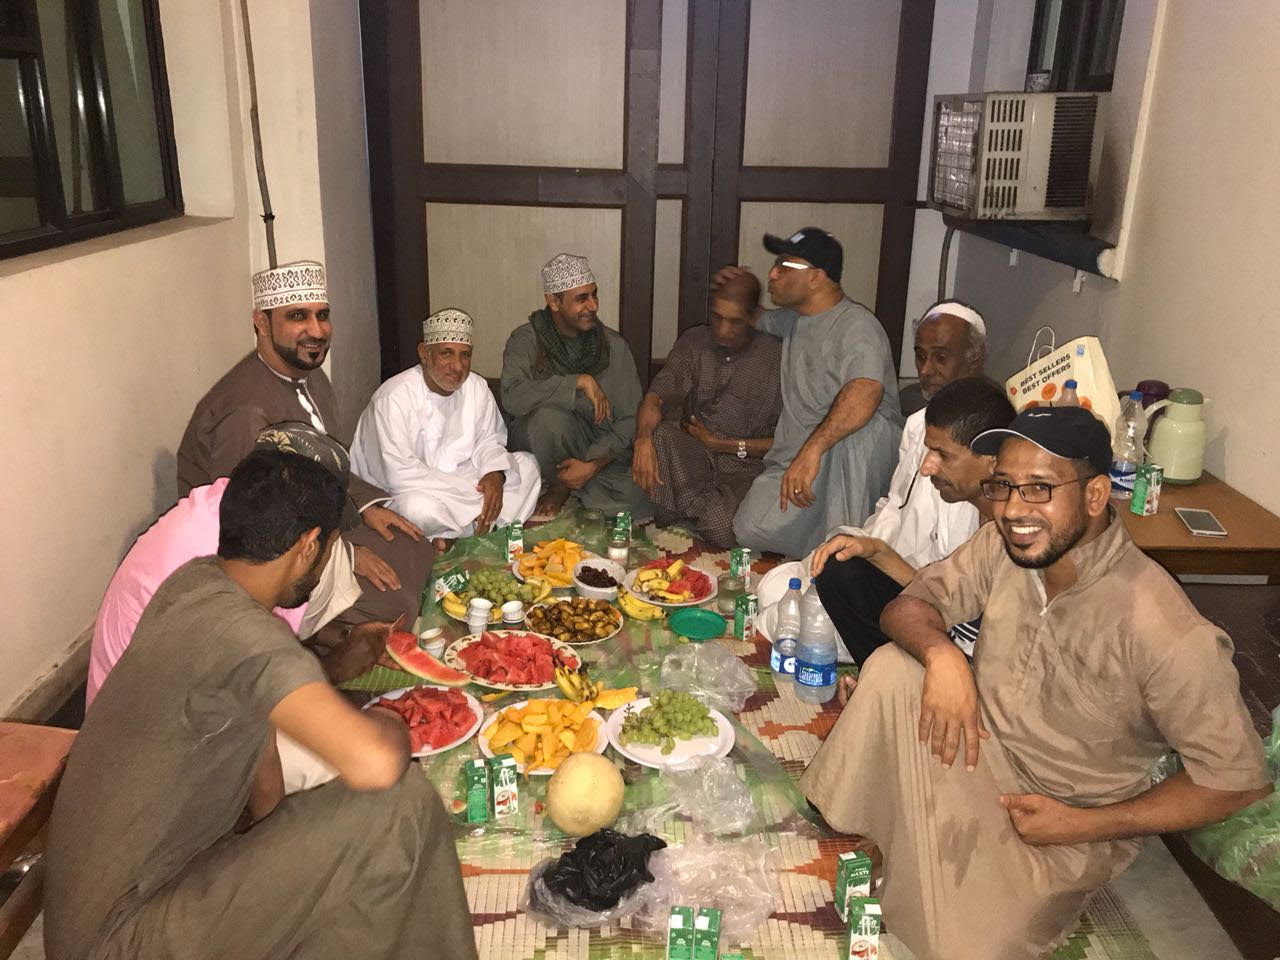 إفطار رمضاني يجمع المواطنين المحتجزين في الهند مع بعض أفراد أسرهم